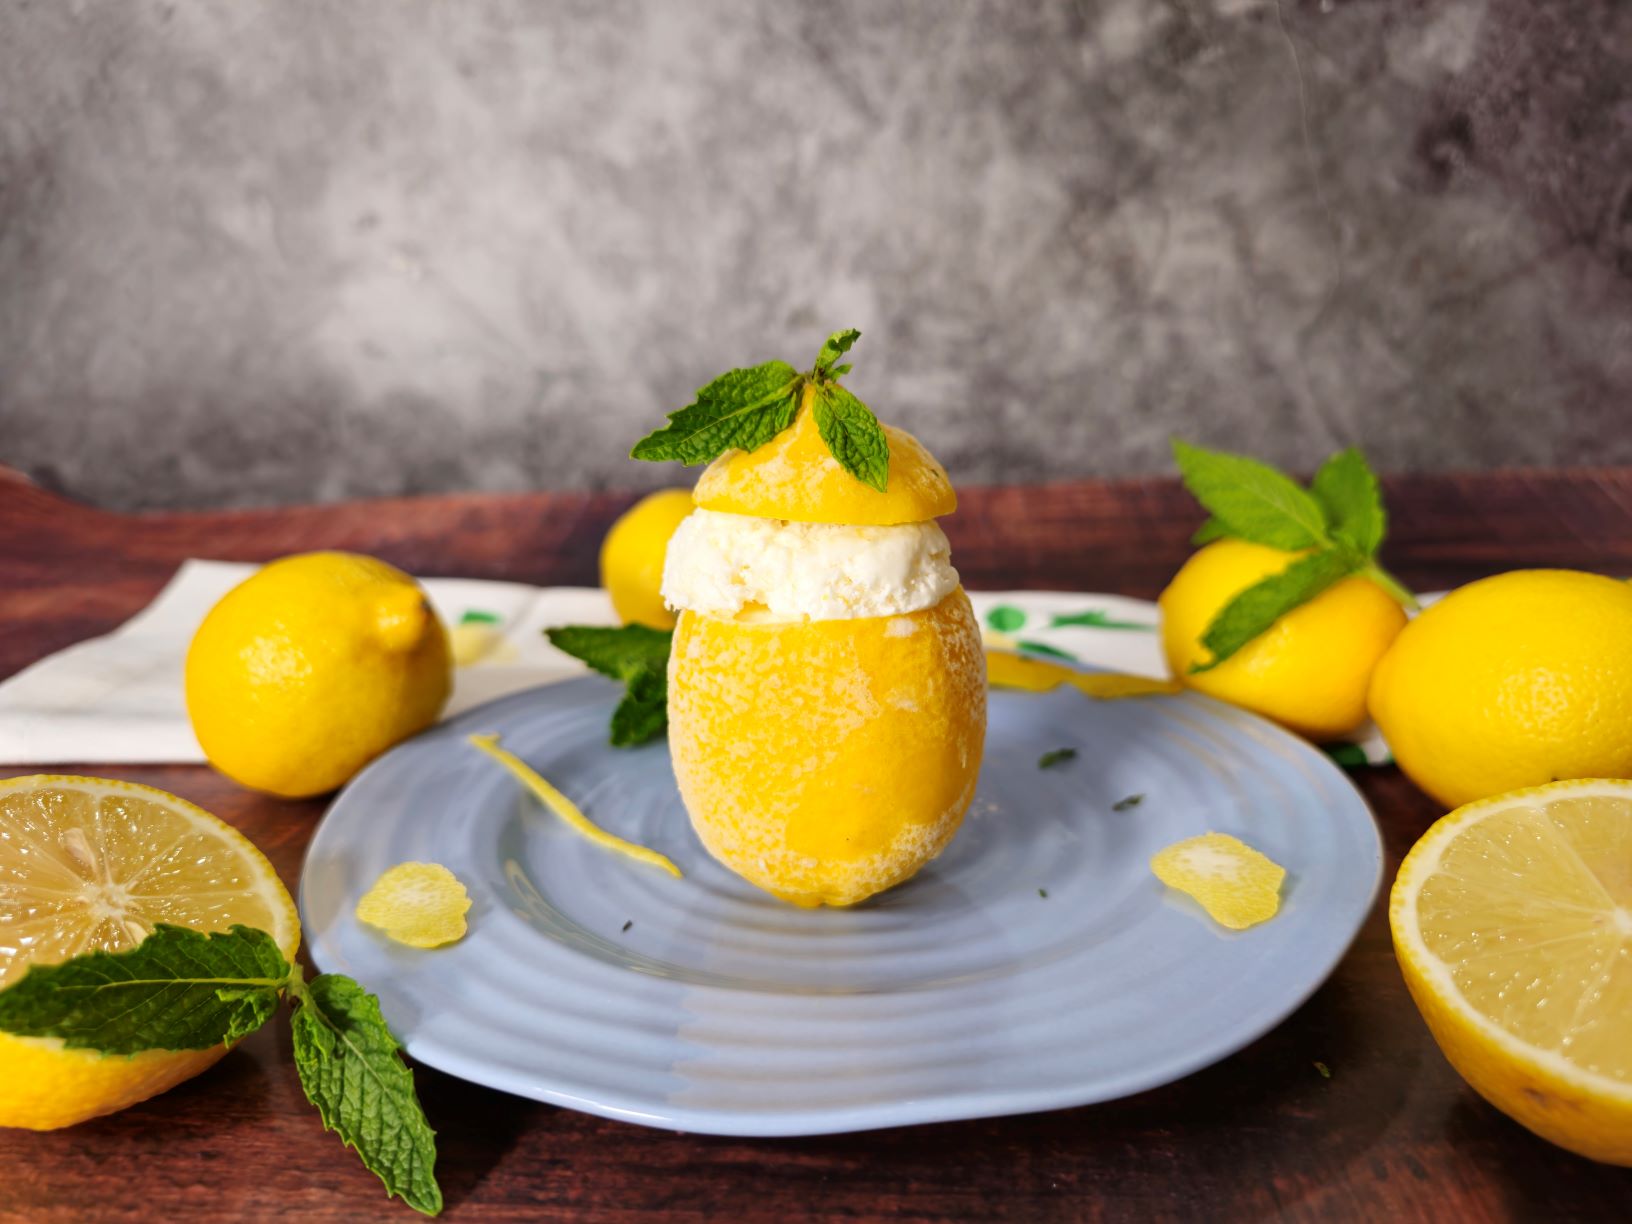 Lemon Gelato